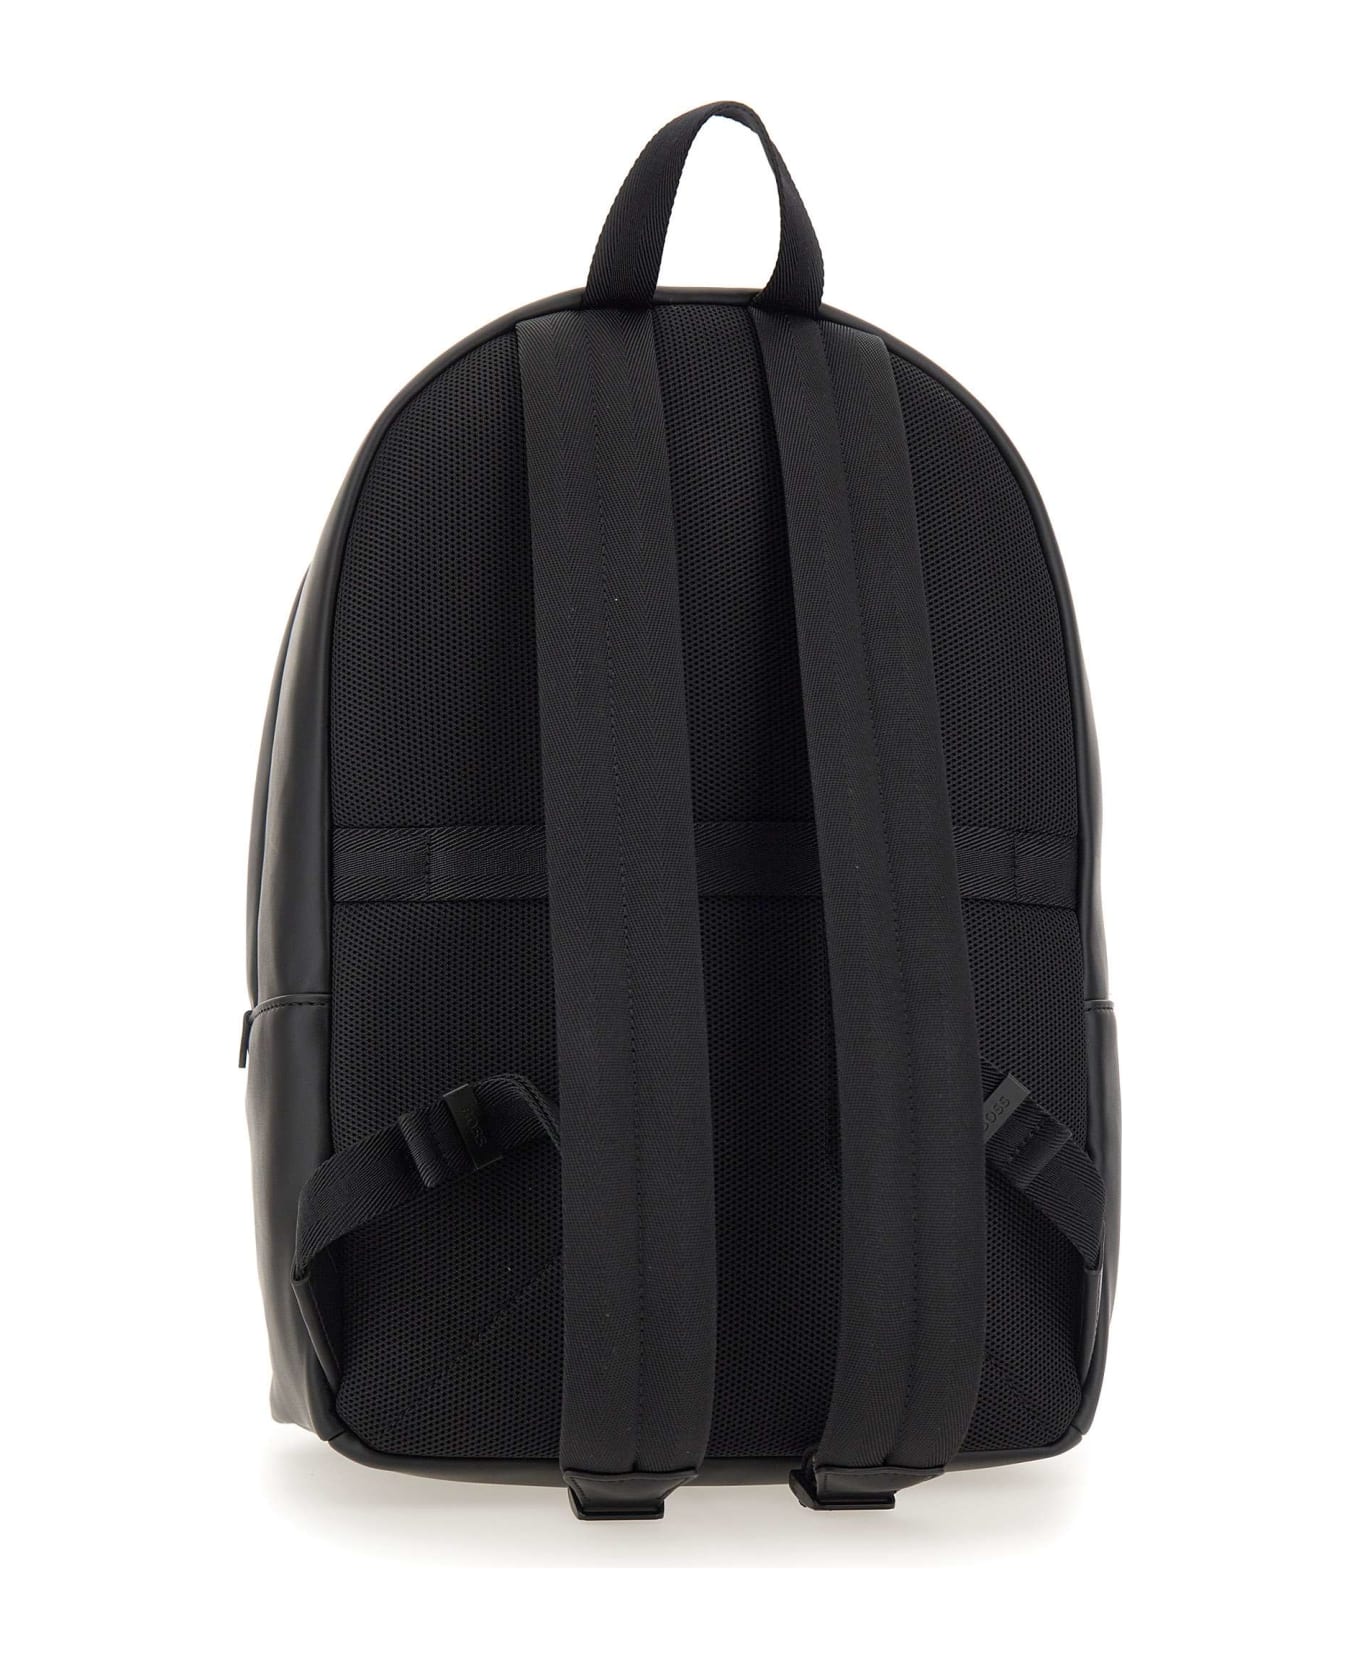 Hugo Boss 'ray' Backpack - Black